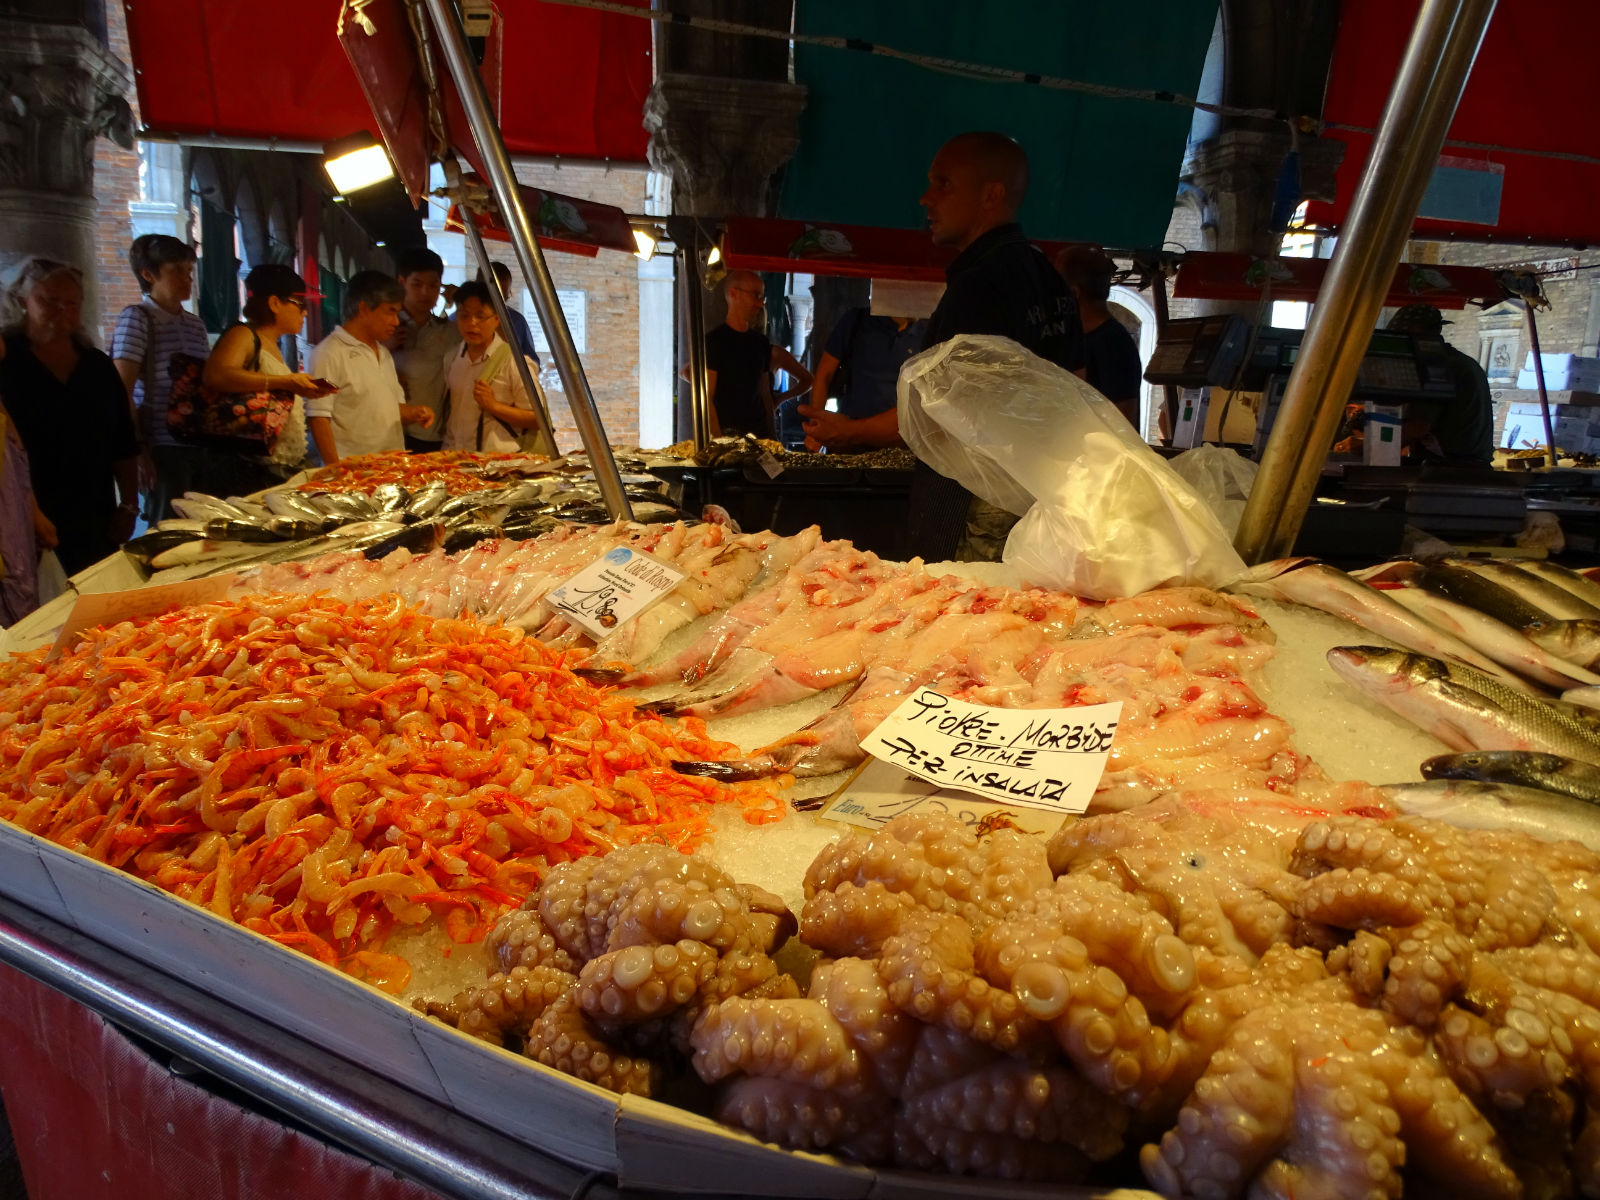 Fischmarkt Venedig